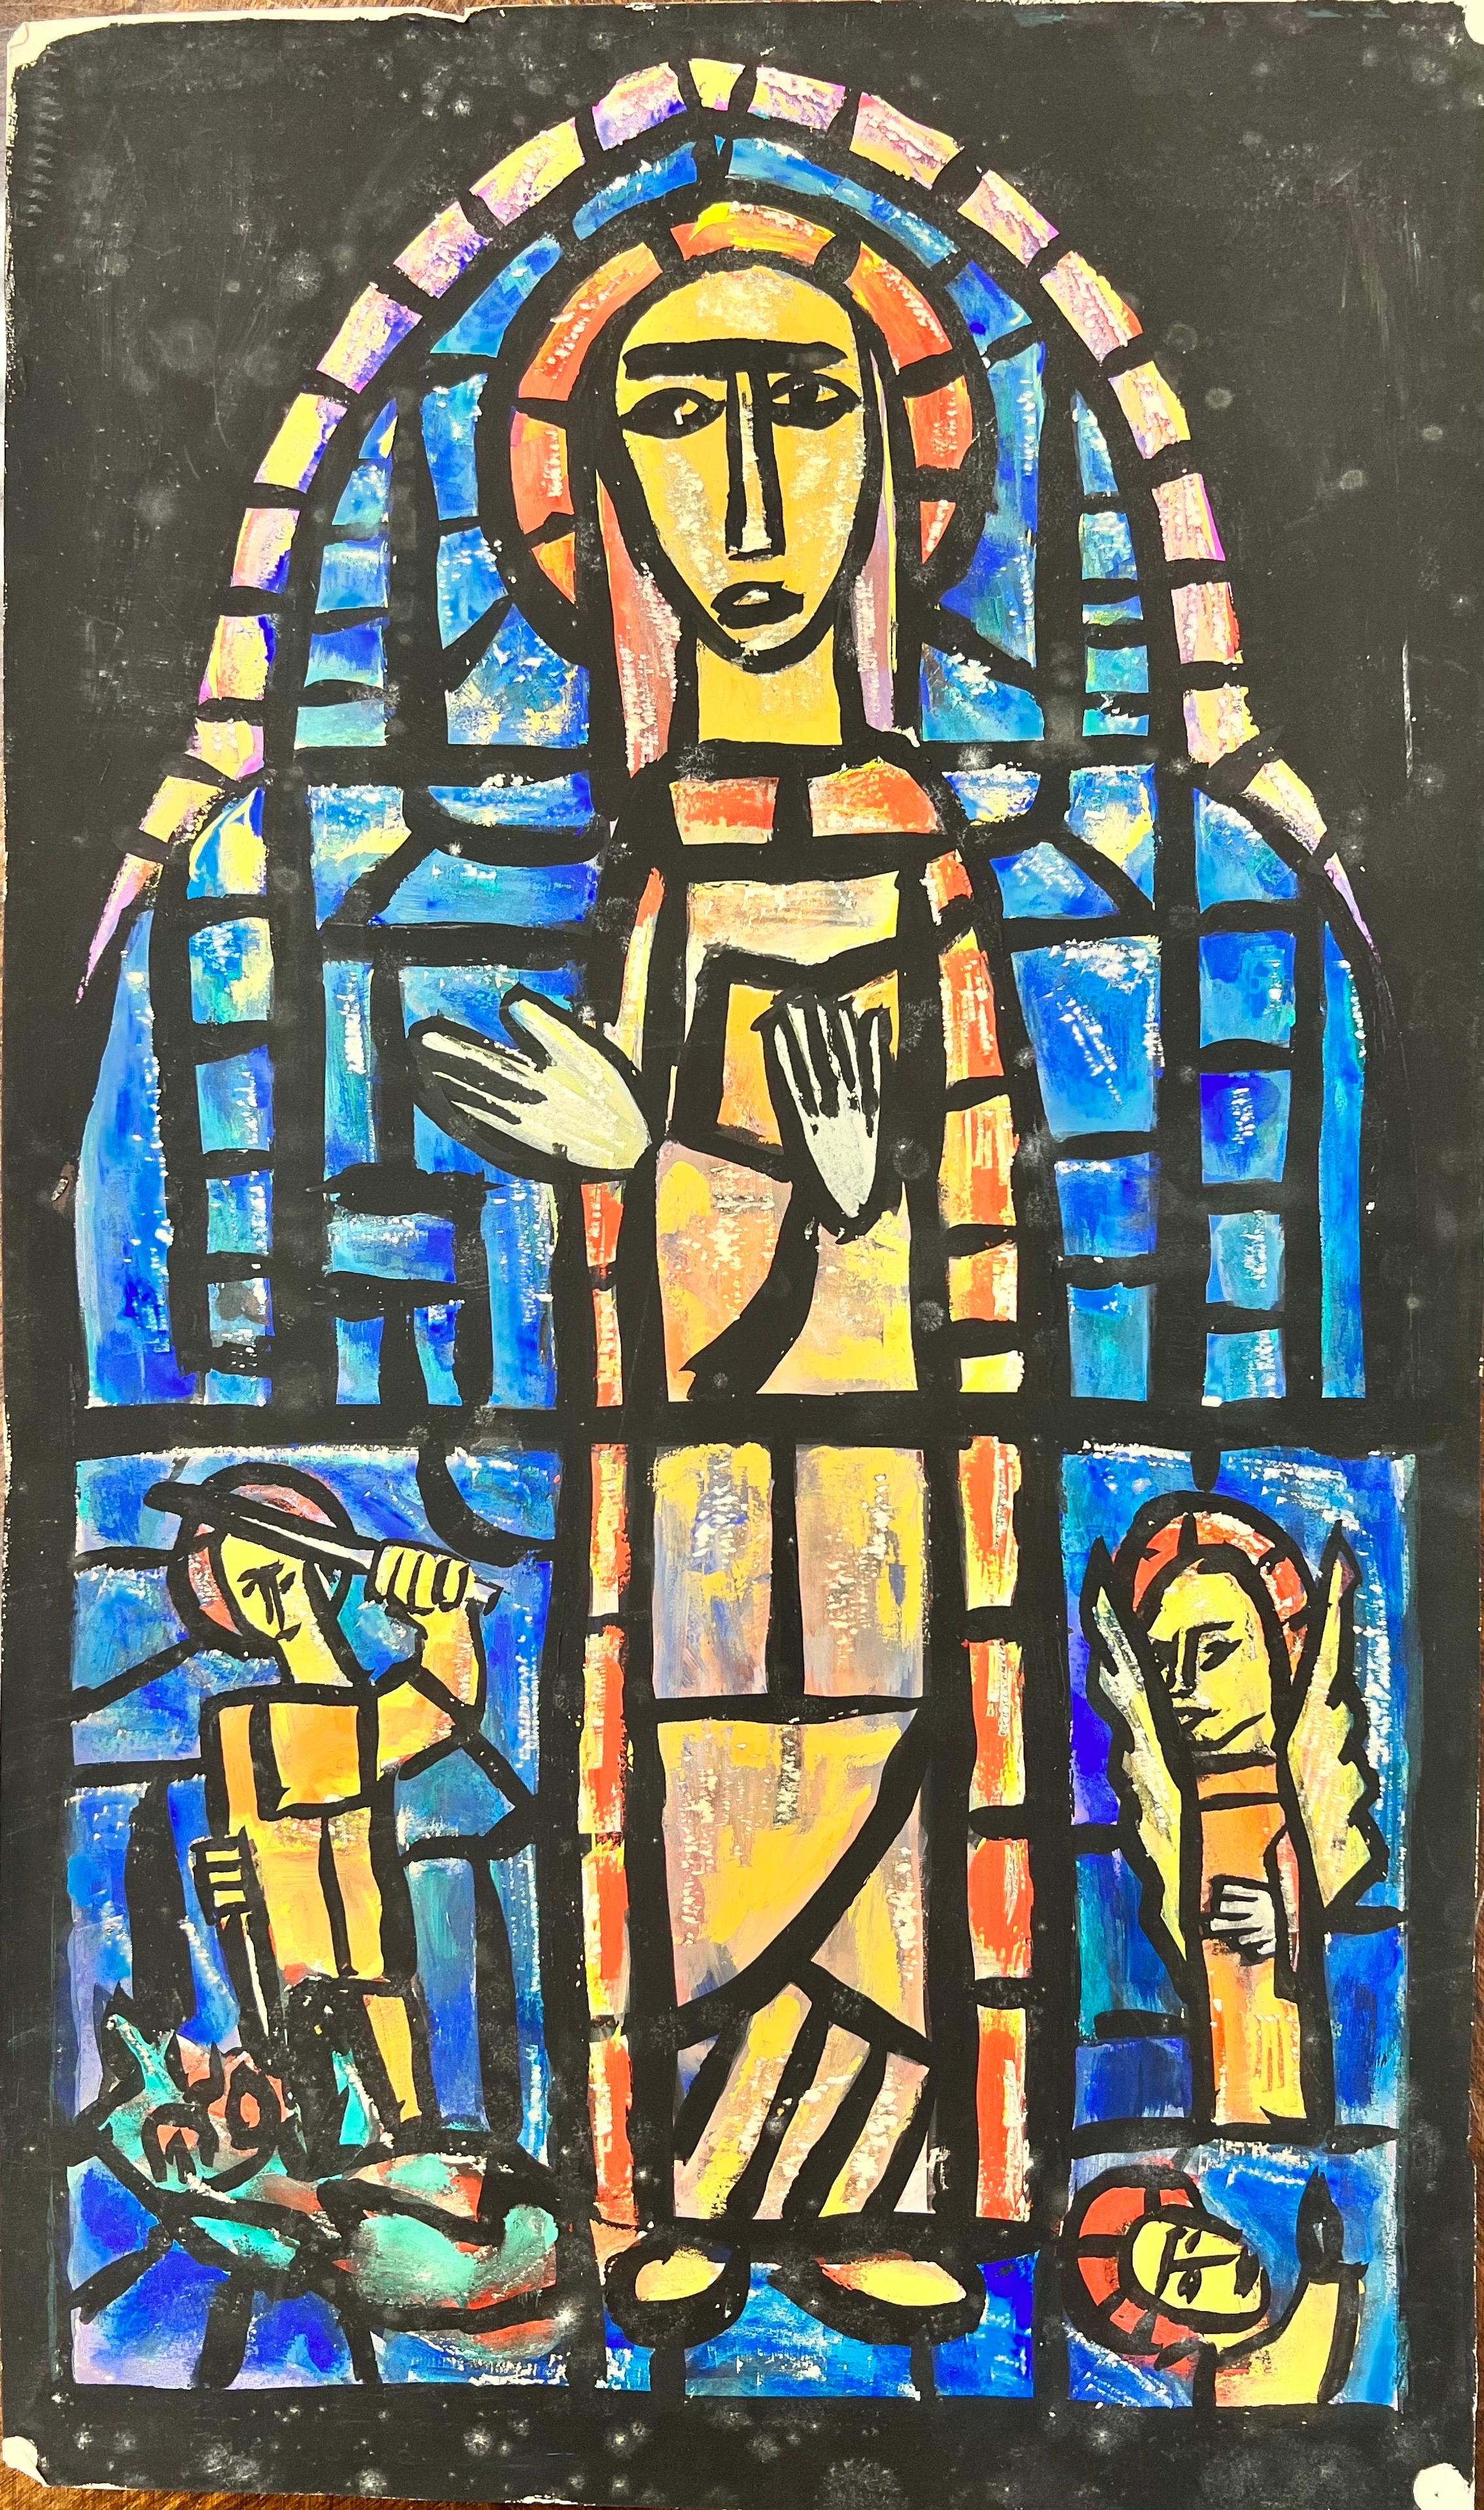 Bernard Labbe Abstract Painting – Modernistische/kubistische Malerei der 1950er Jahre - Abstraktes Church's Stained Glass Window